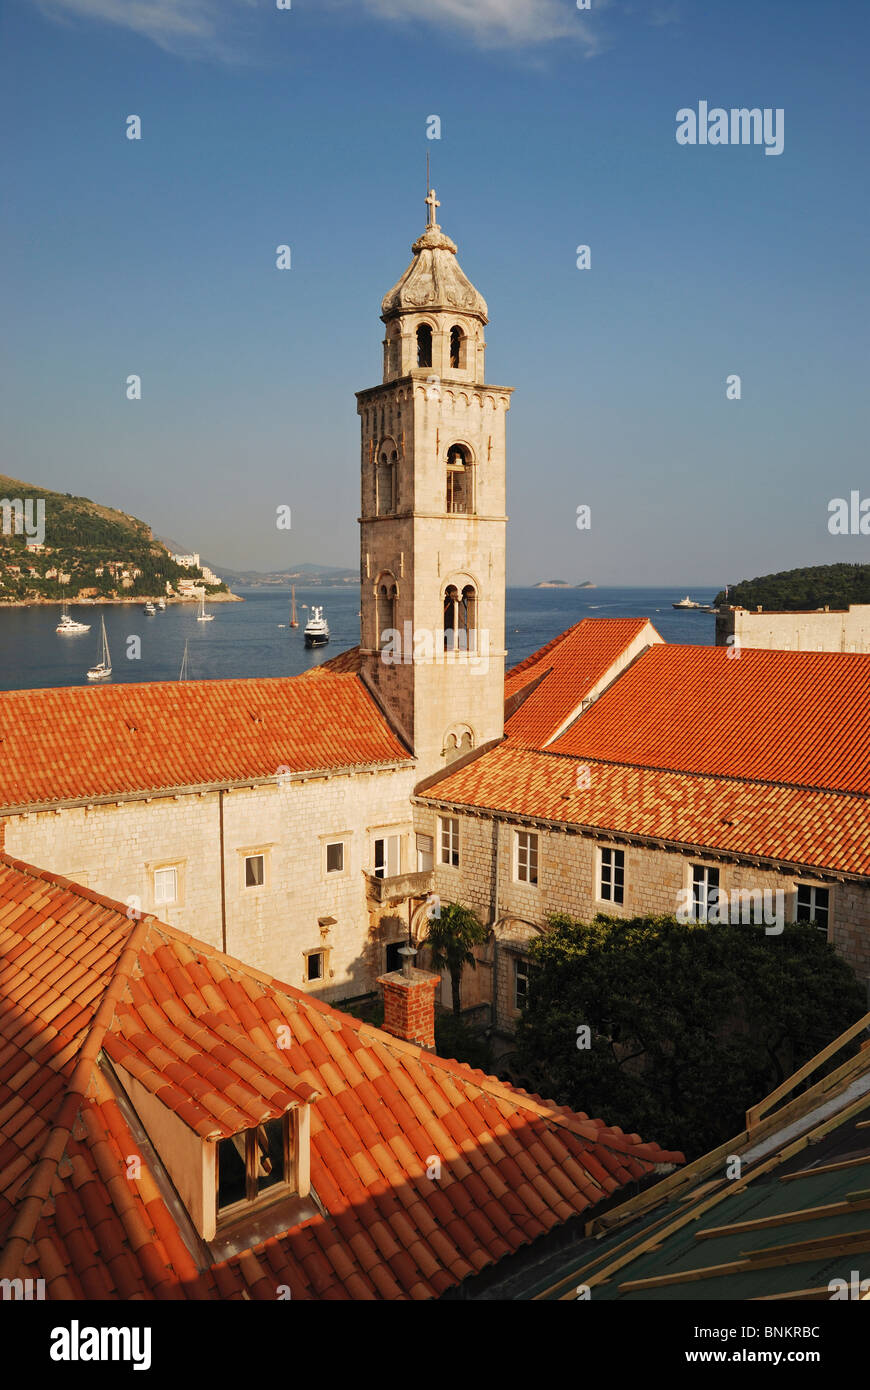 Le monastère dominicain dans la vieille ville de Dubrovnik, Croatie. Banque D'Images